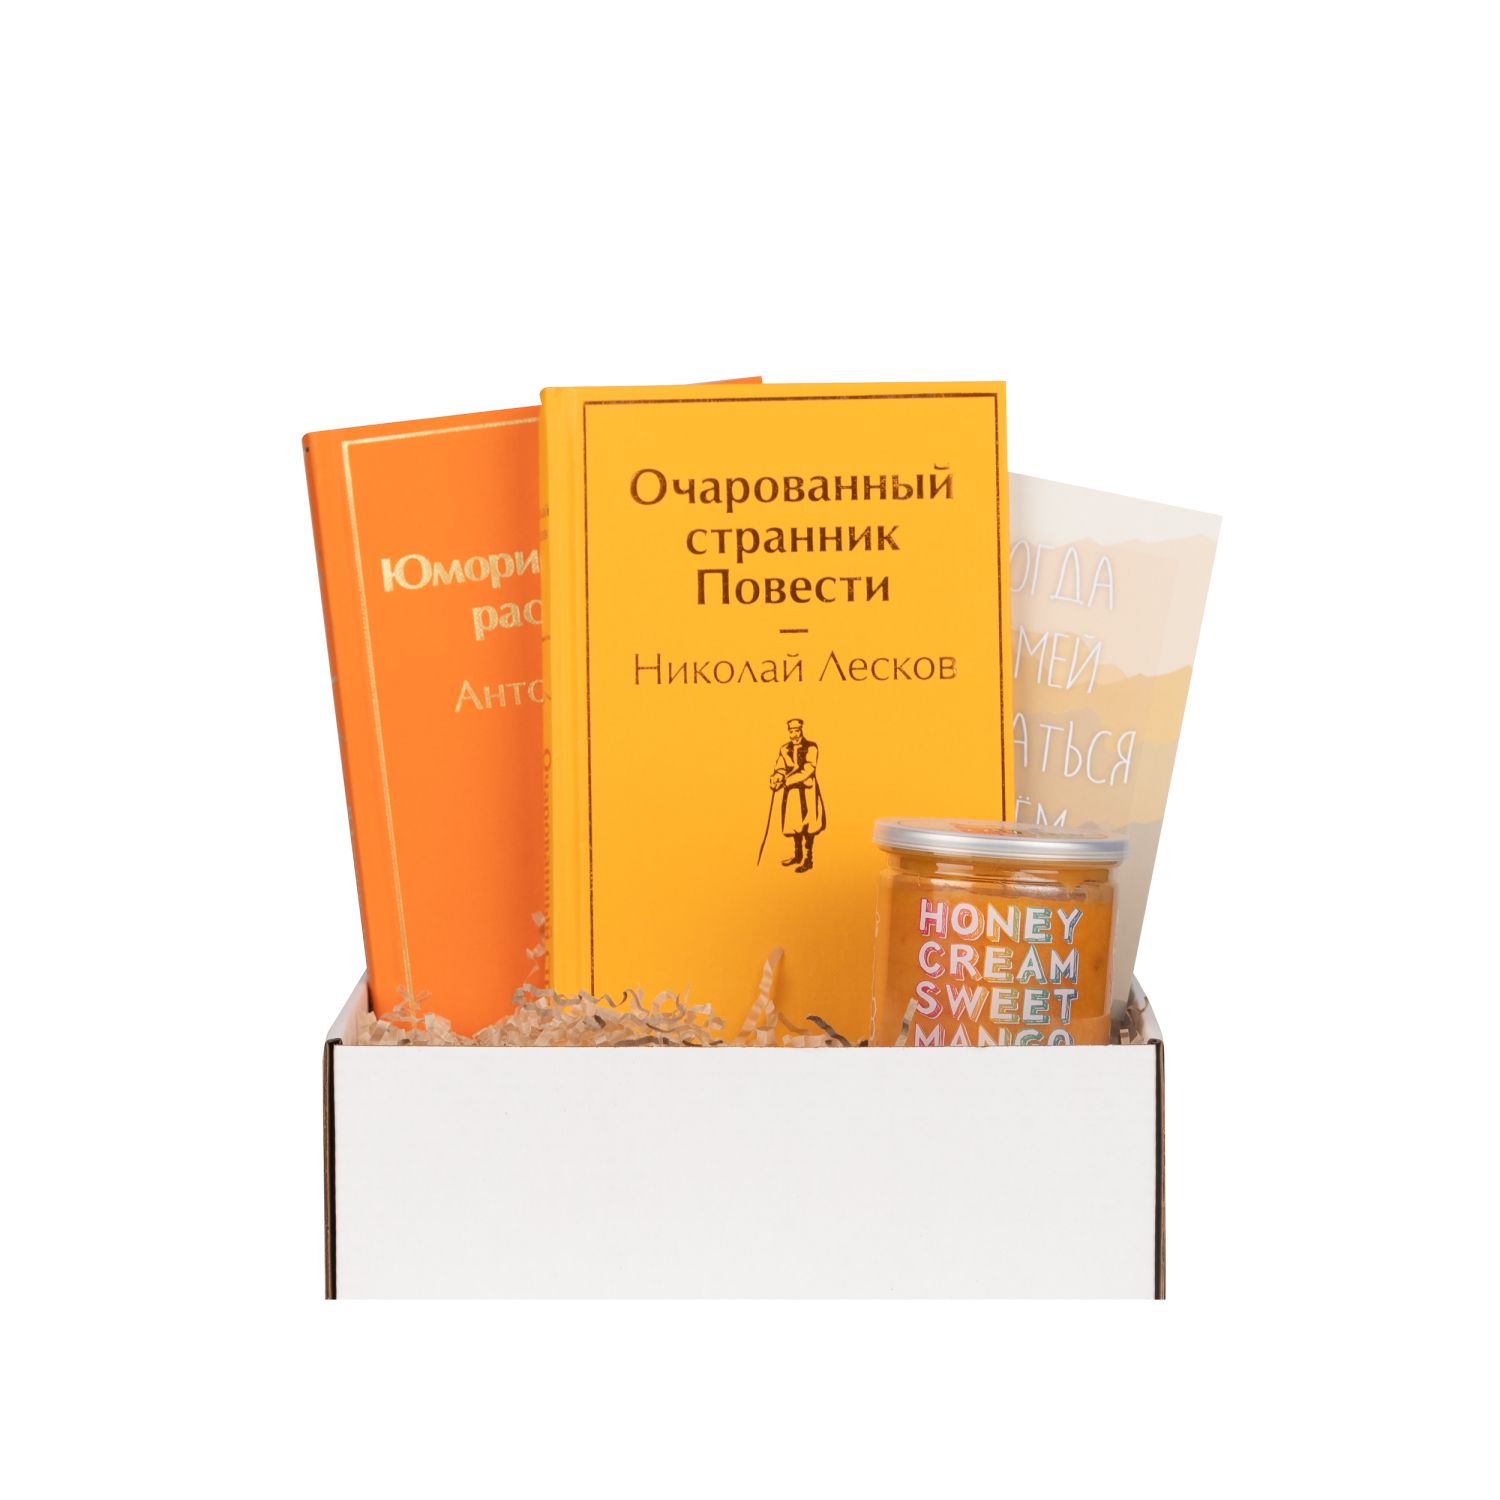 Подарочный набор с книгами «Юмористические рассказы», «Очарованный странник» и кремовым медом